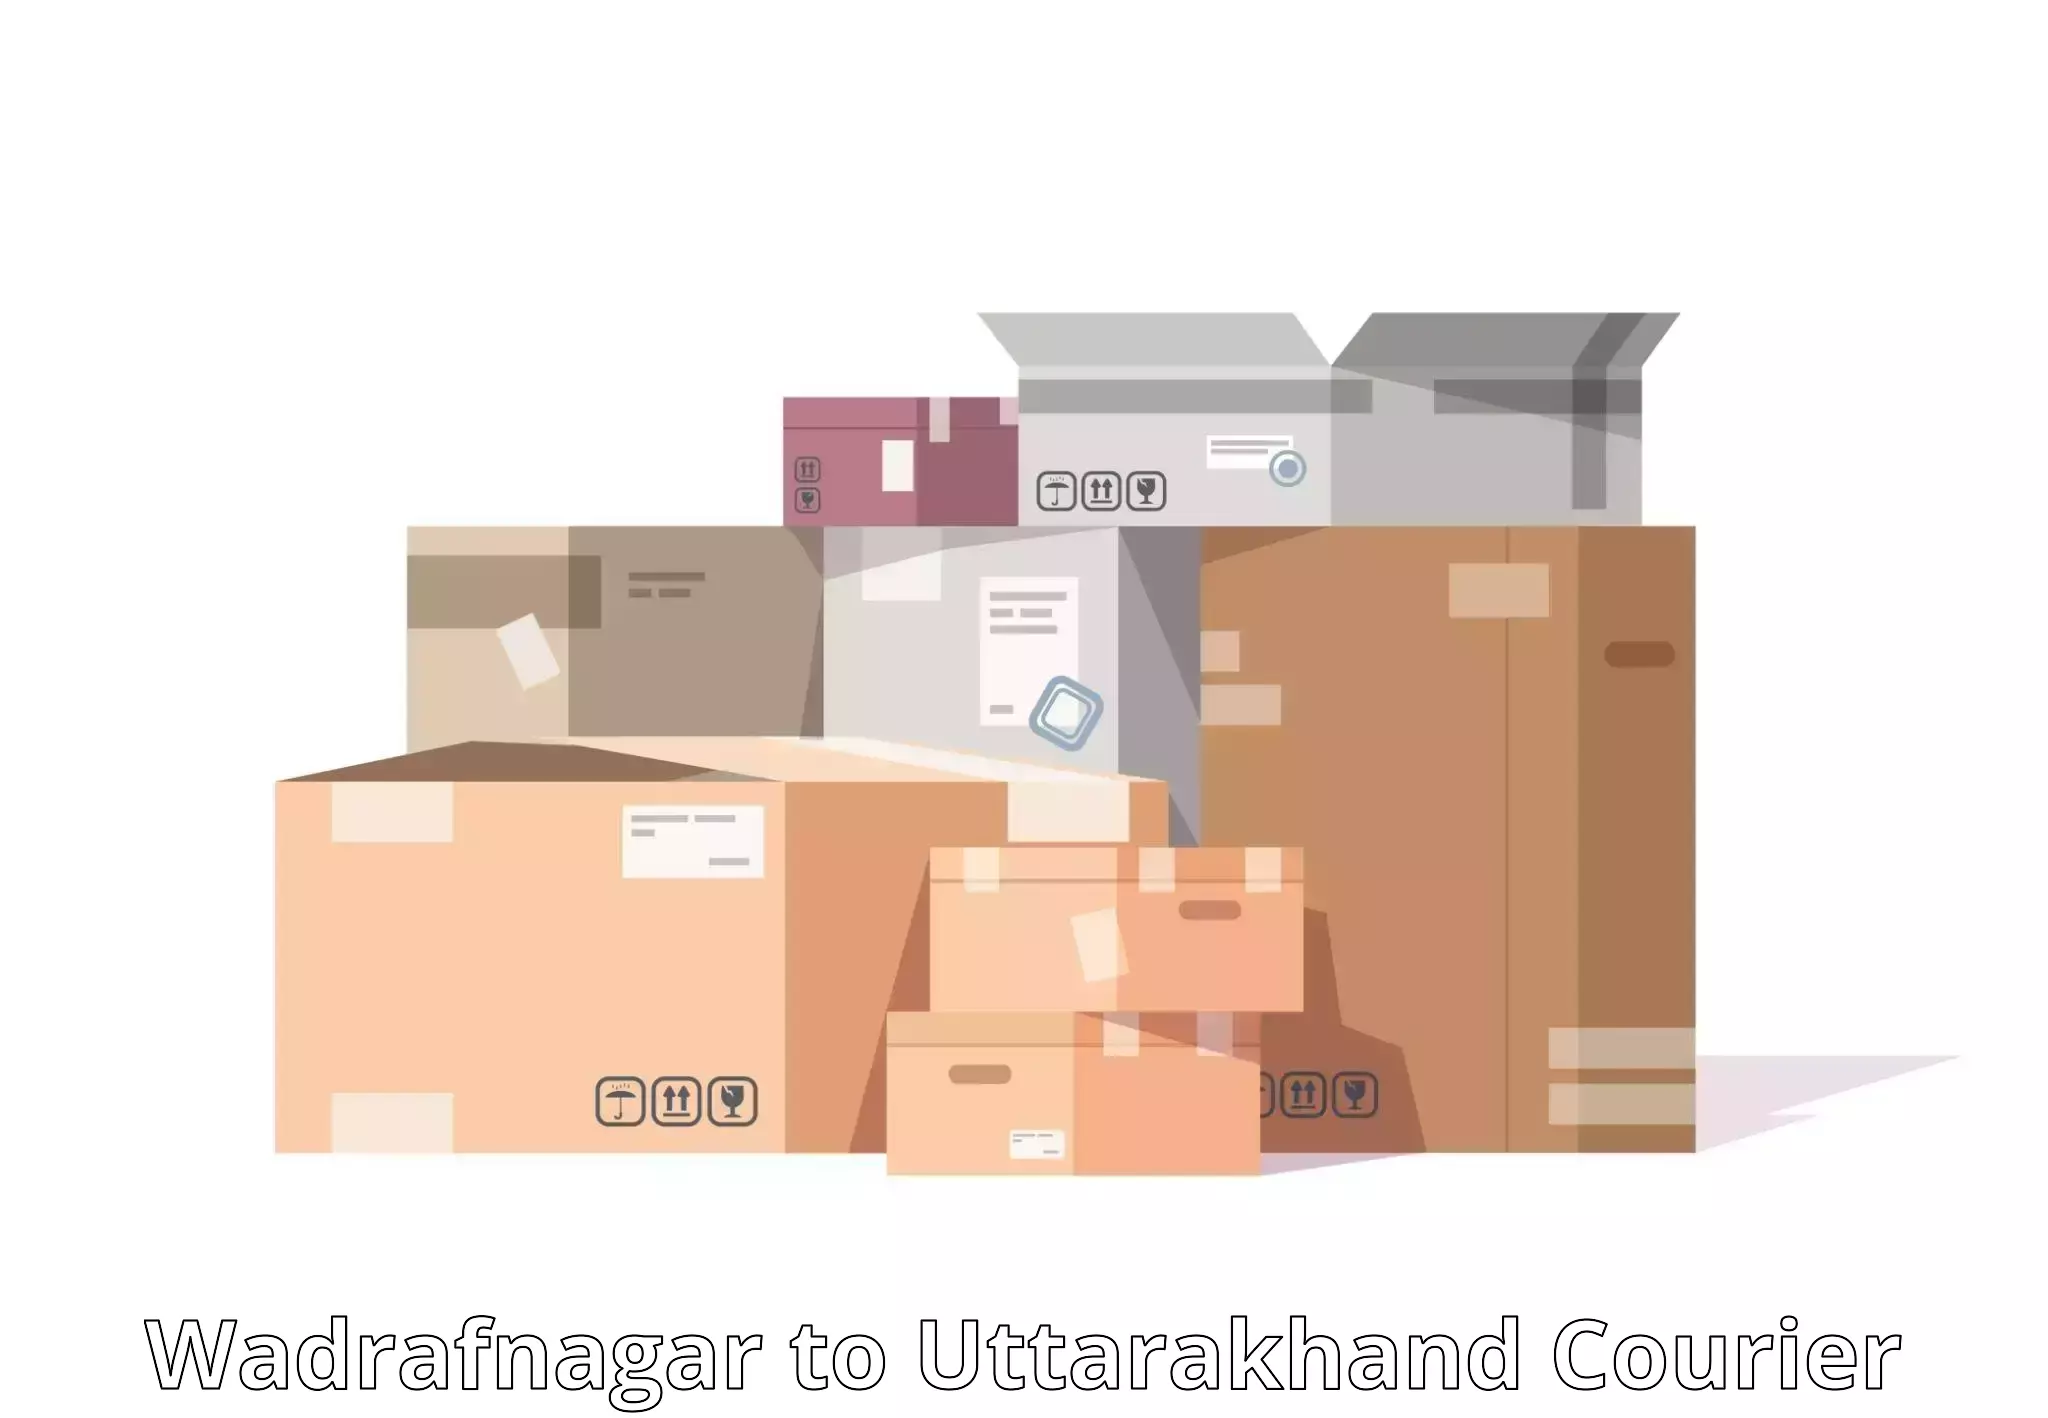 Efficient logistics management Wadrafnagar to Pauri Garhwal